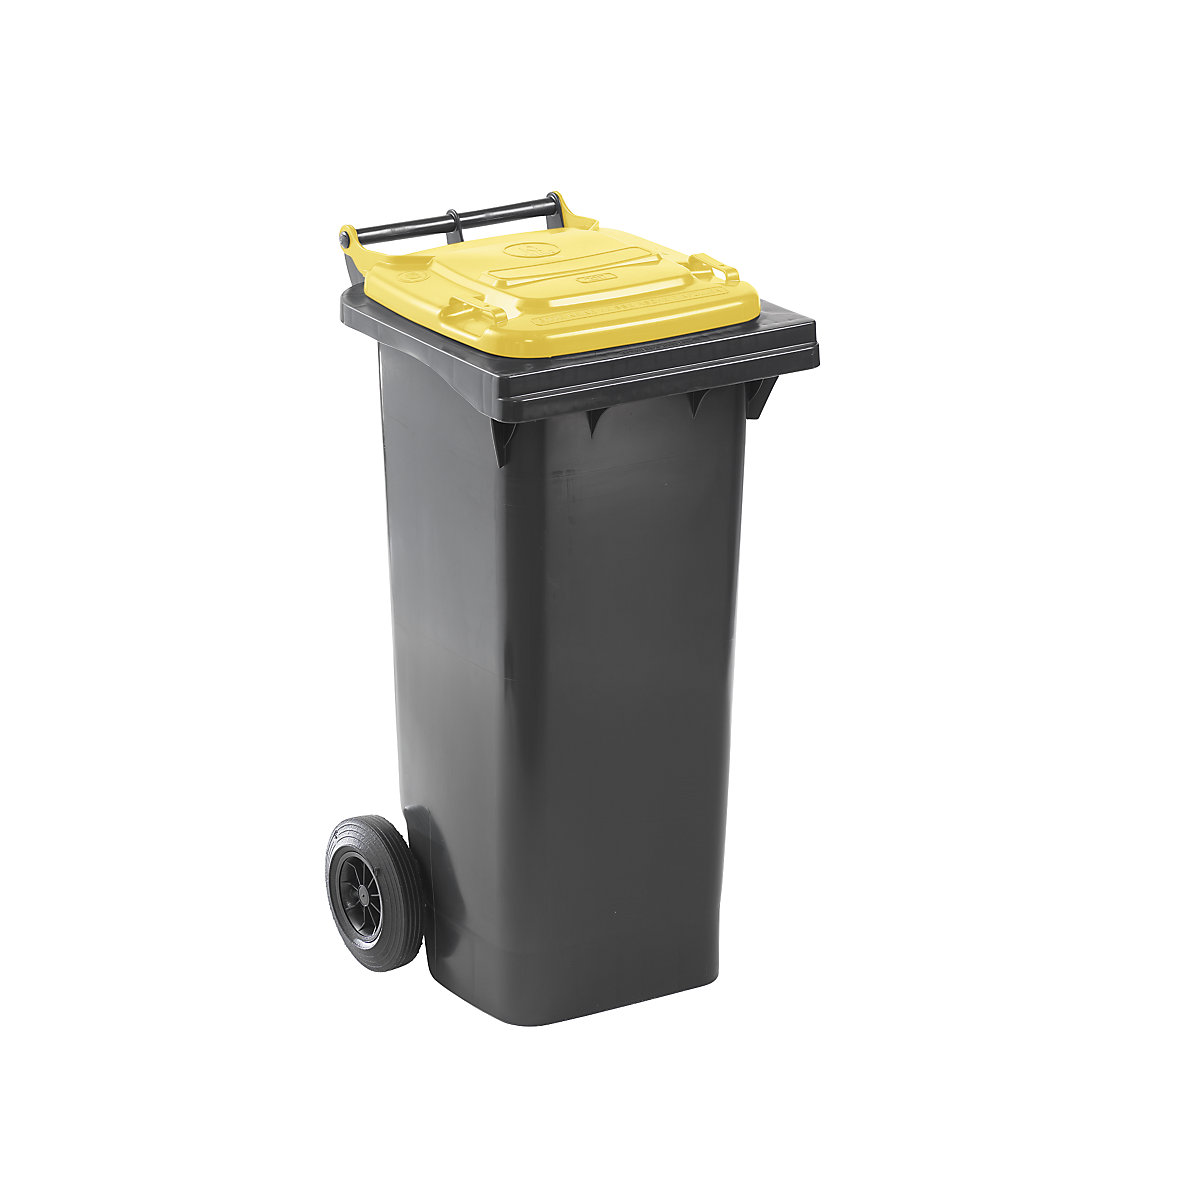 DIN EN 840 szabvány szerinti hulladékgyűjtő, űrtartalom 80 l, szé x ma x mé 448 x 975 x 530 mm, antracit színben, sárga fedéllel